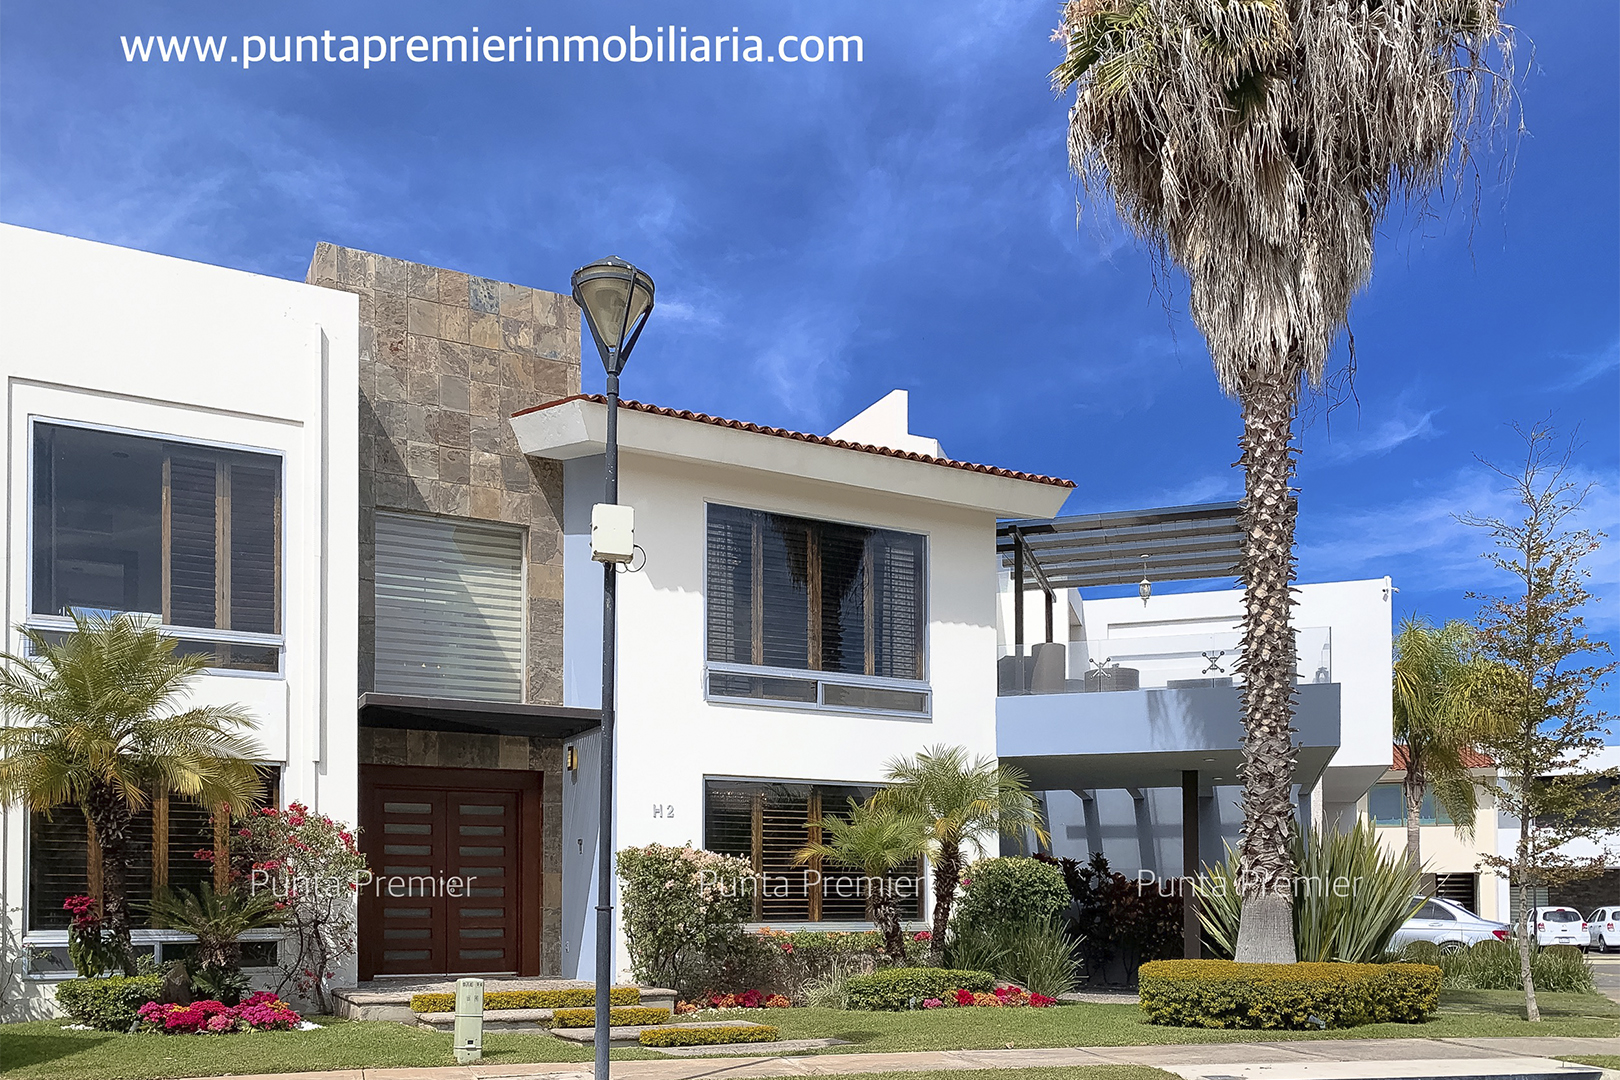 Casa de Lujo en Renta Los Olivos Zona Valle Real - Punta Premier